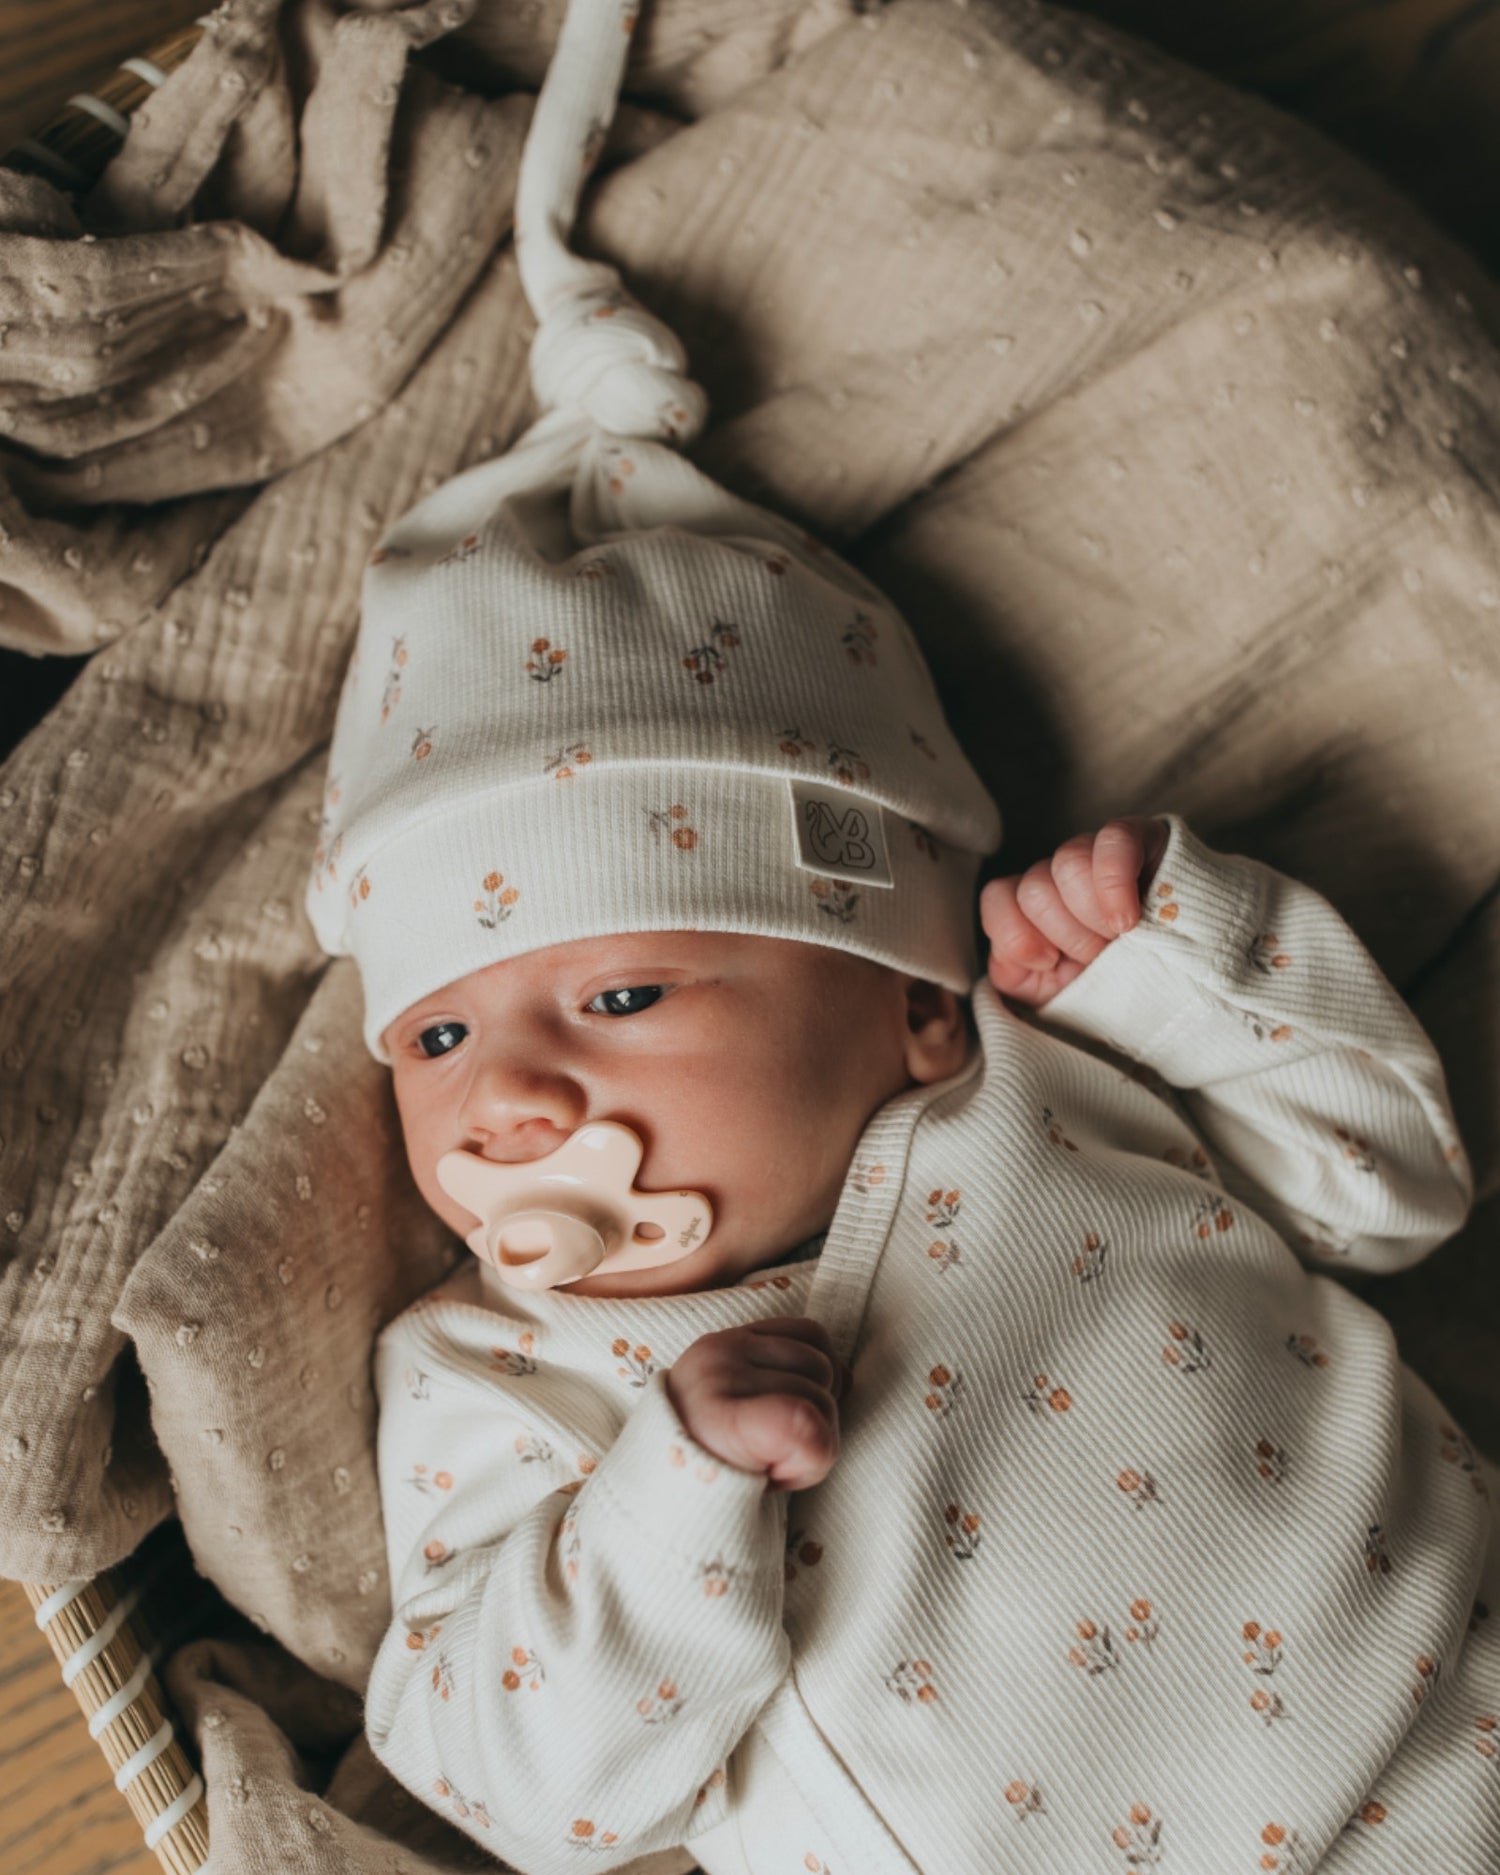 Een vredige pasgeboren baby in een schattig wit outfitje met printjes, wegdommelend met kleine handjes bij het gezichtje, lekker weggestopt op een zacht, zijdezacht dekentje met een Yumi Baby Muts Peach Blossom op het hoofdje.